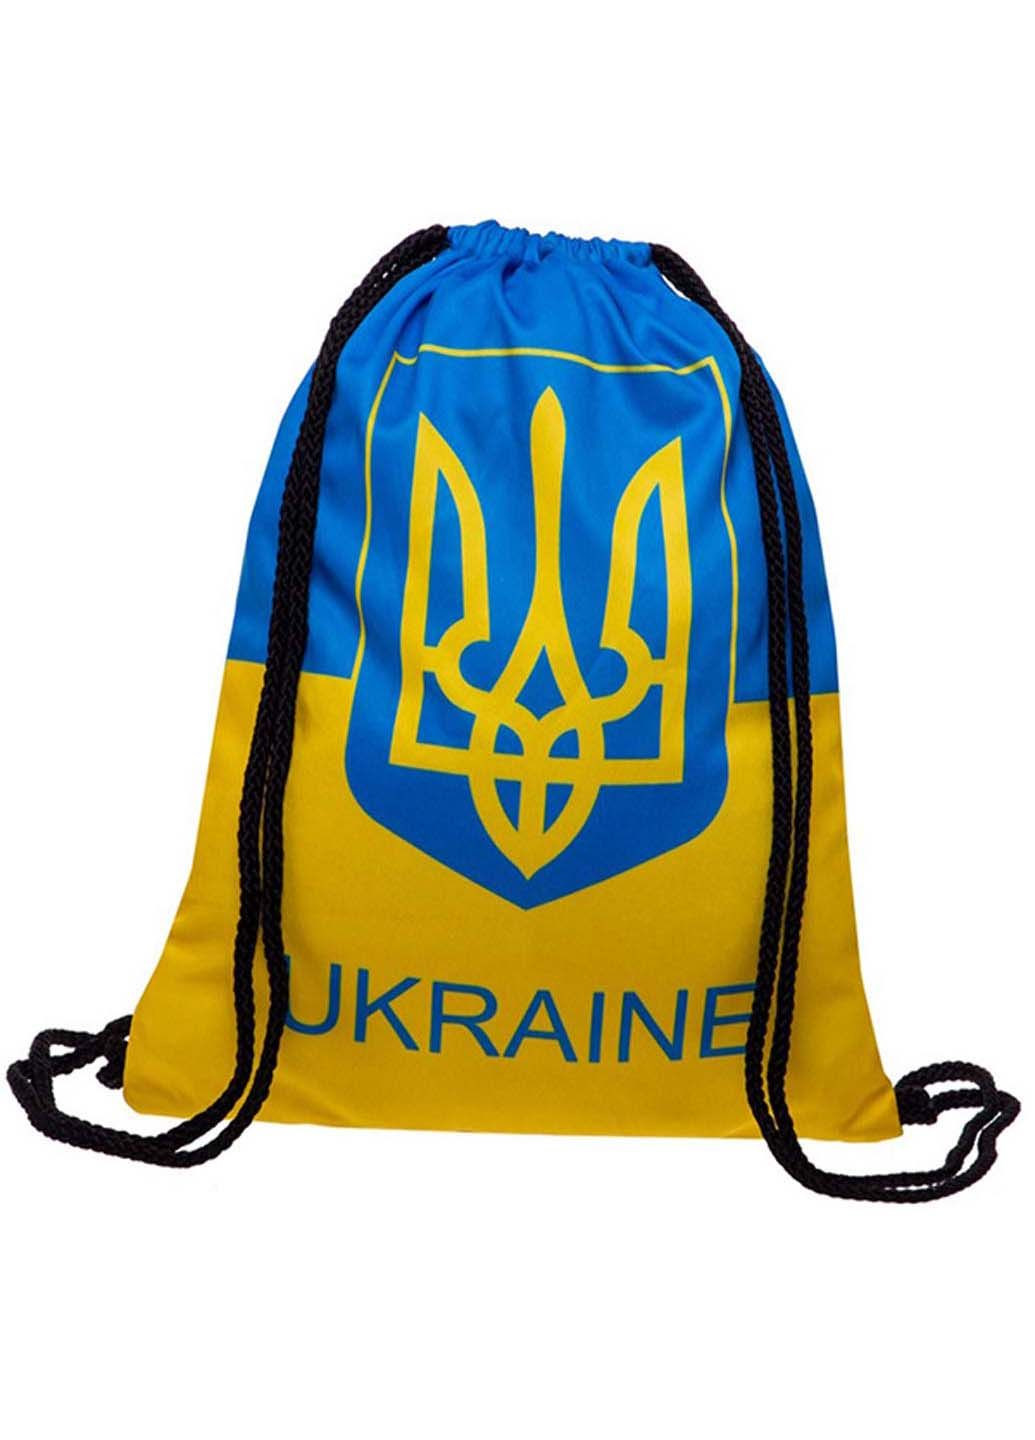 Рюкзак-мешок Ukraine GA-4433-UKR FDSO (293515925)